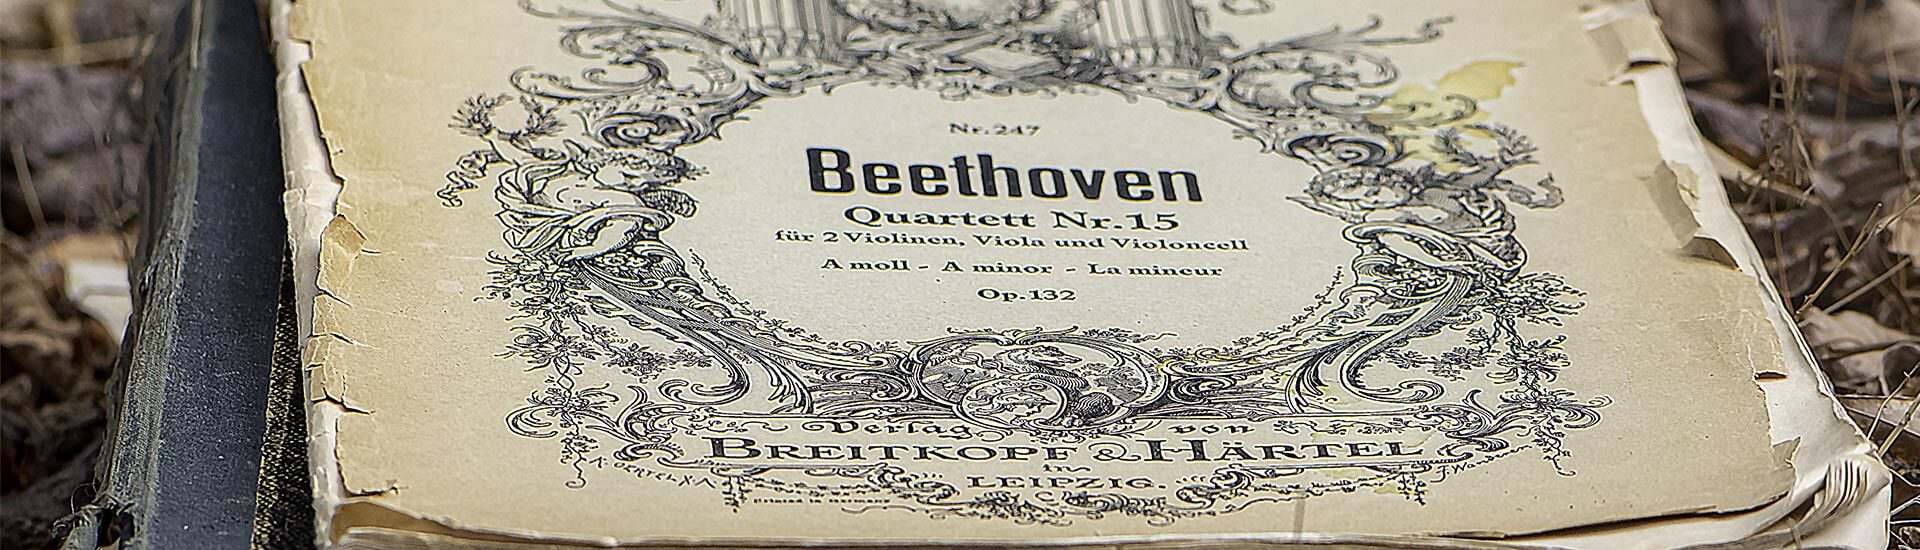 Beethoven Quartett Nr. 15